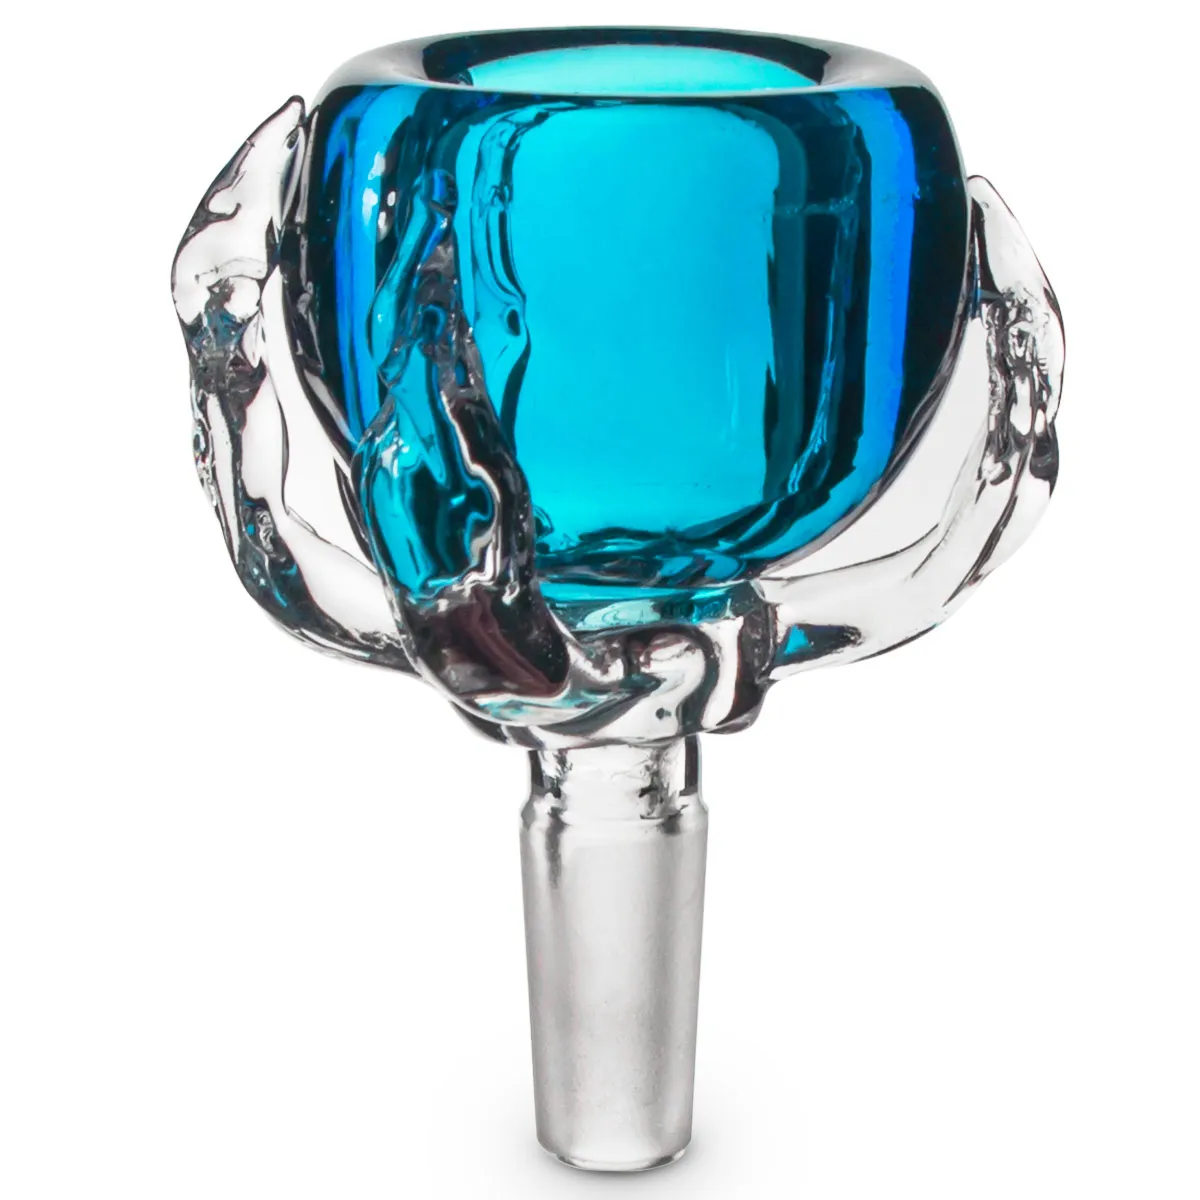 Formax420 10mm Dragon Claw Design Glass Bowls Glass Accessories Fem färger tillgängliga 5 gratis skärmar gratis frakt